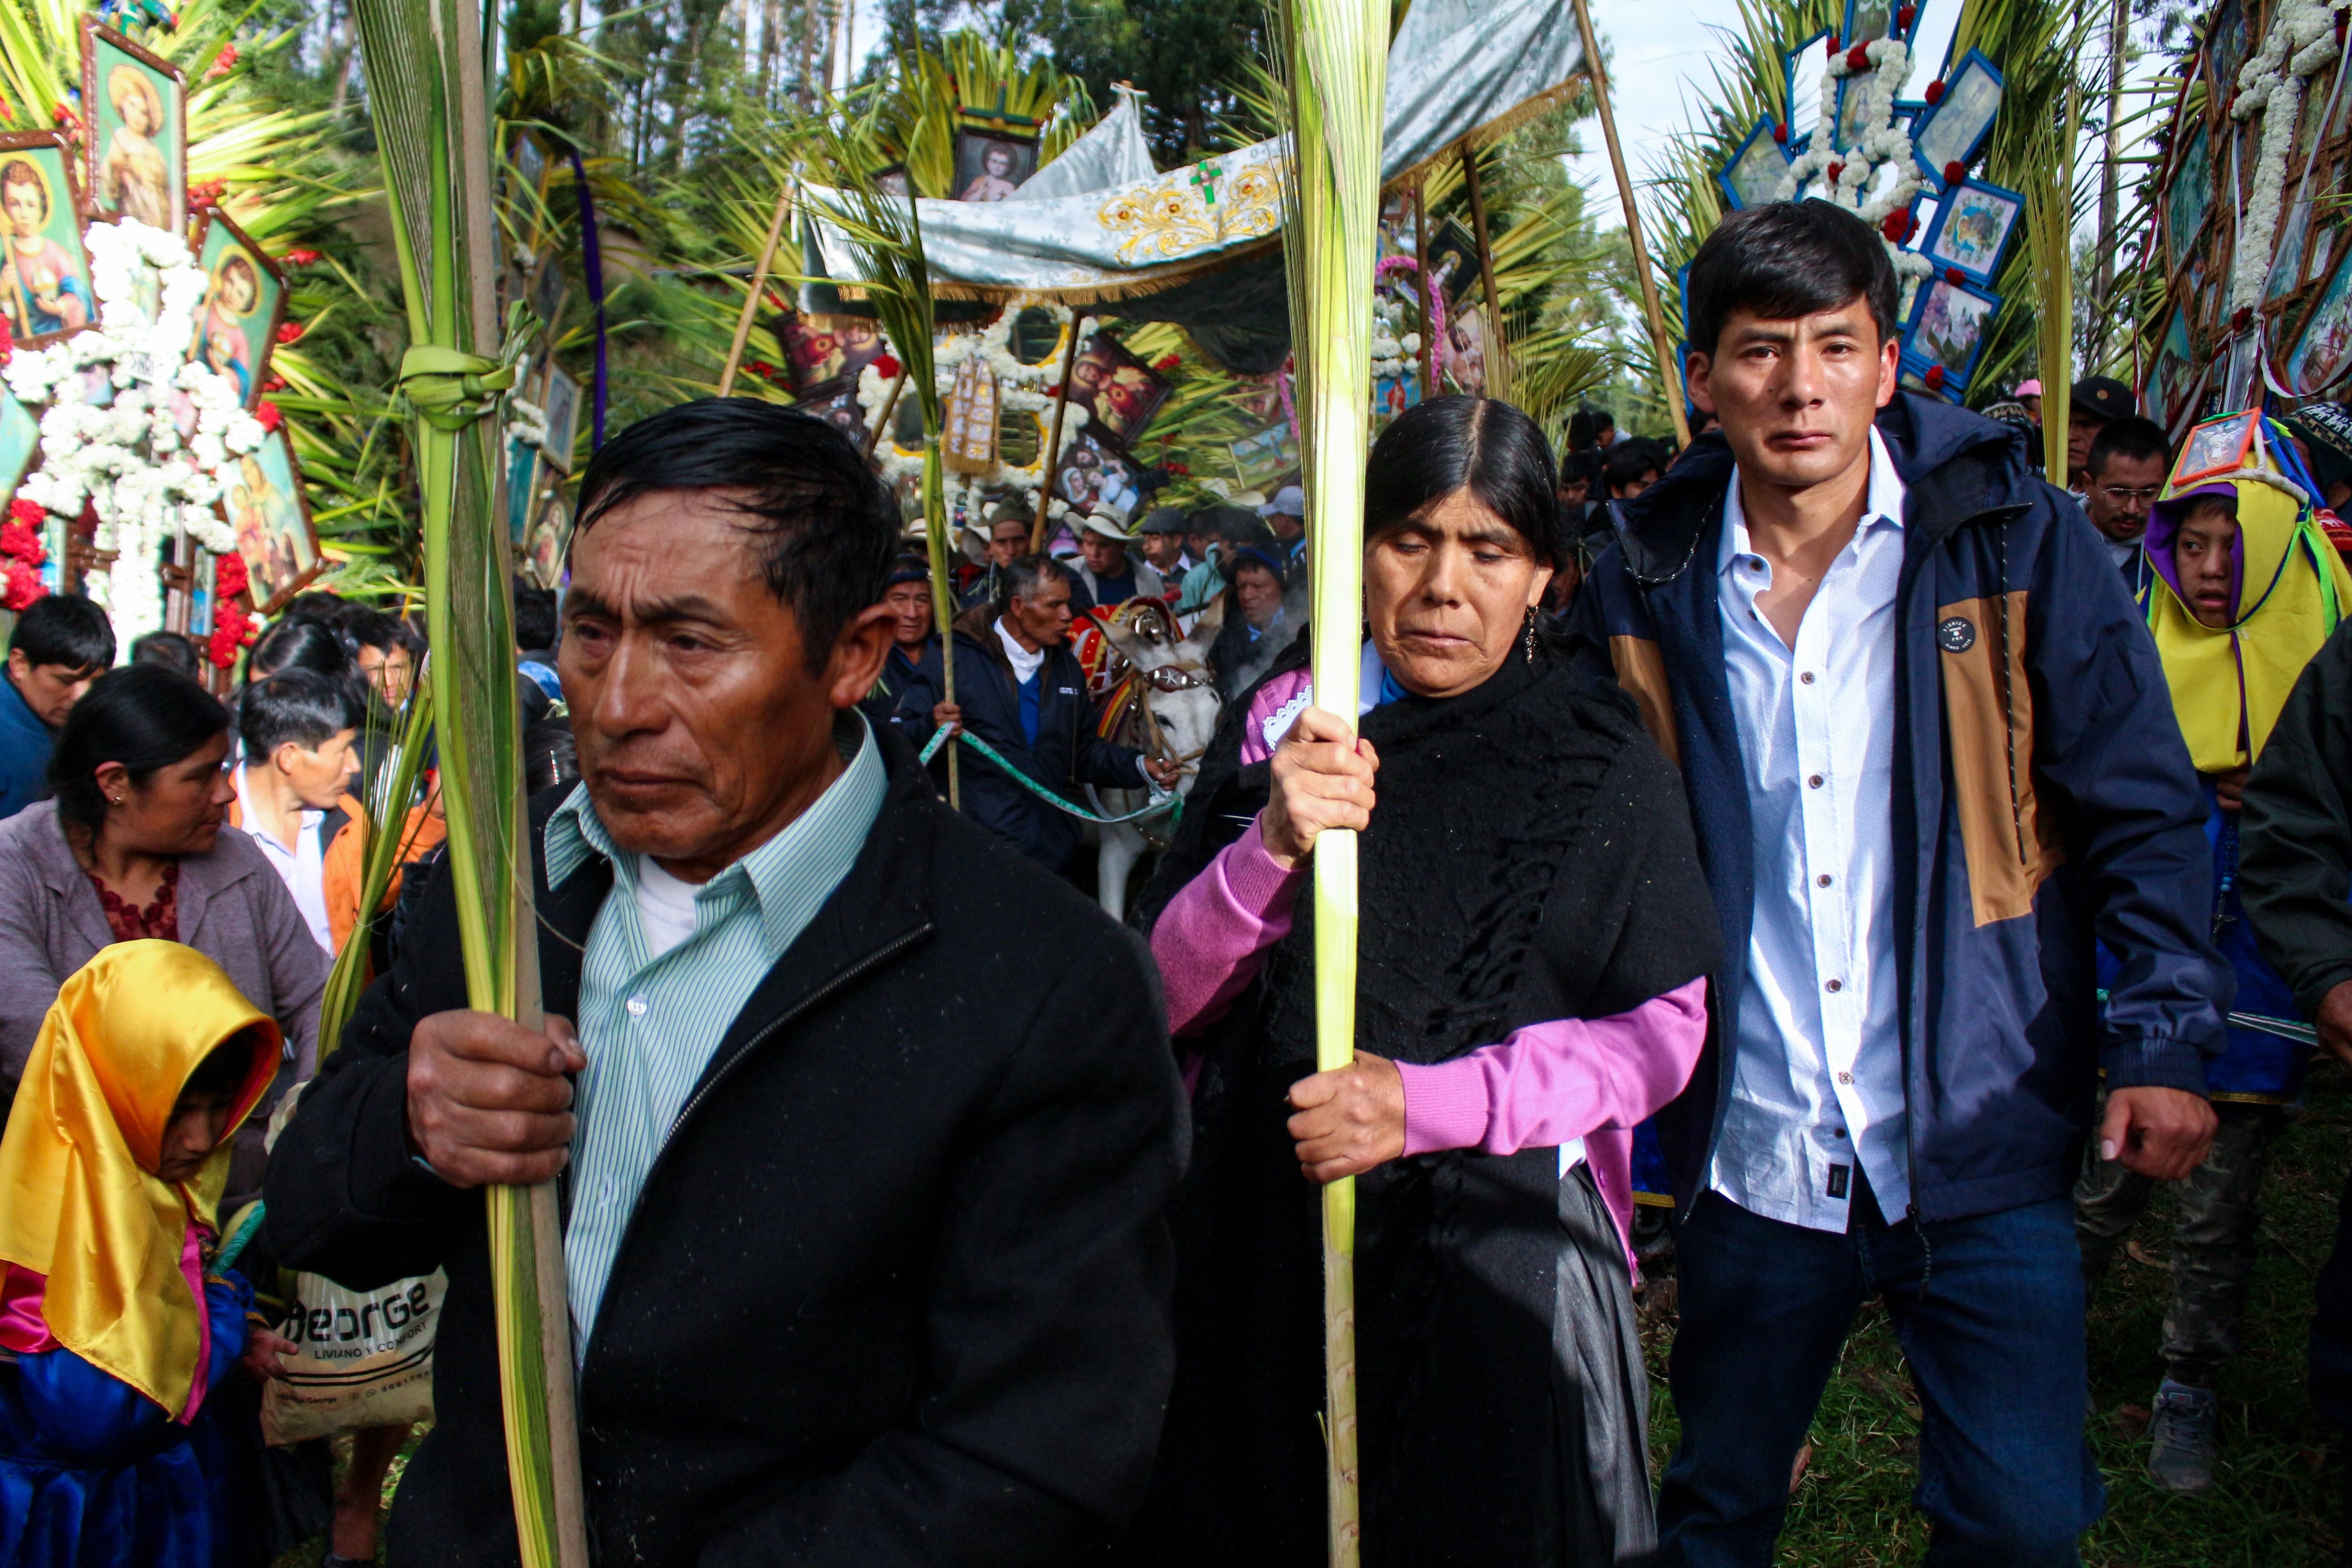 Una multitud concurrió al centro poblado de Porcón Bajo -a 14 kilómetros de la ciudad de Cajamarca- para presenciar en la parroquia de la comunidad la tradicional Fiesta de las Cruces en Domingo de Ramos.